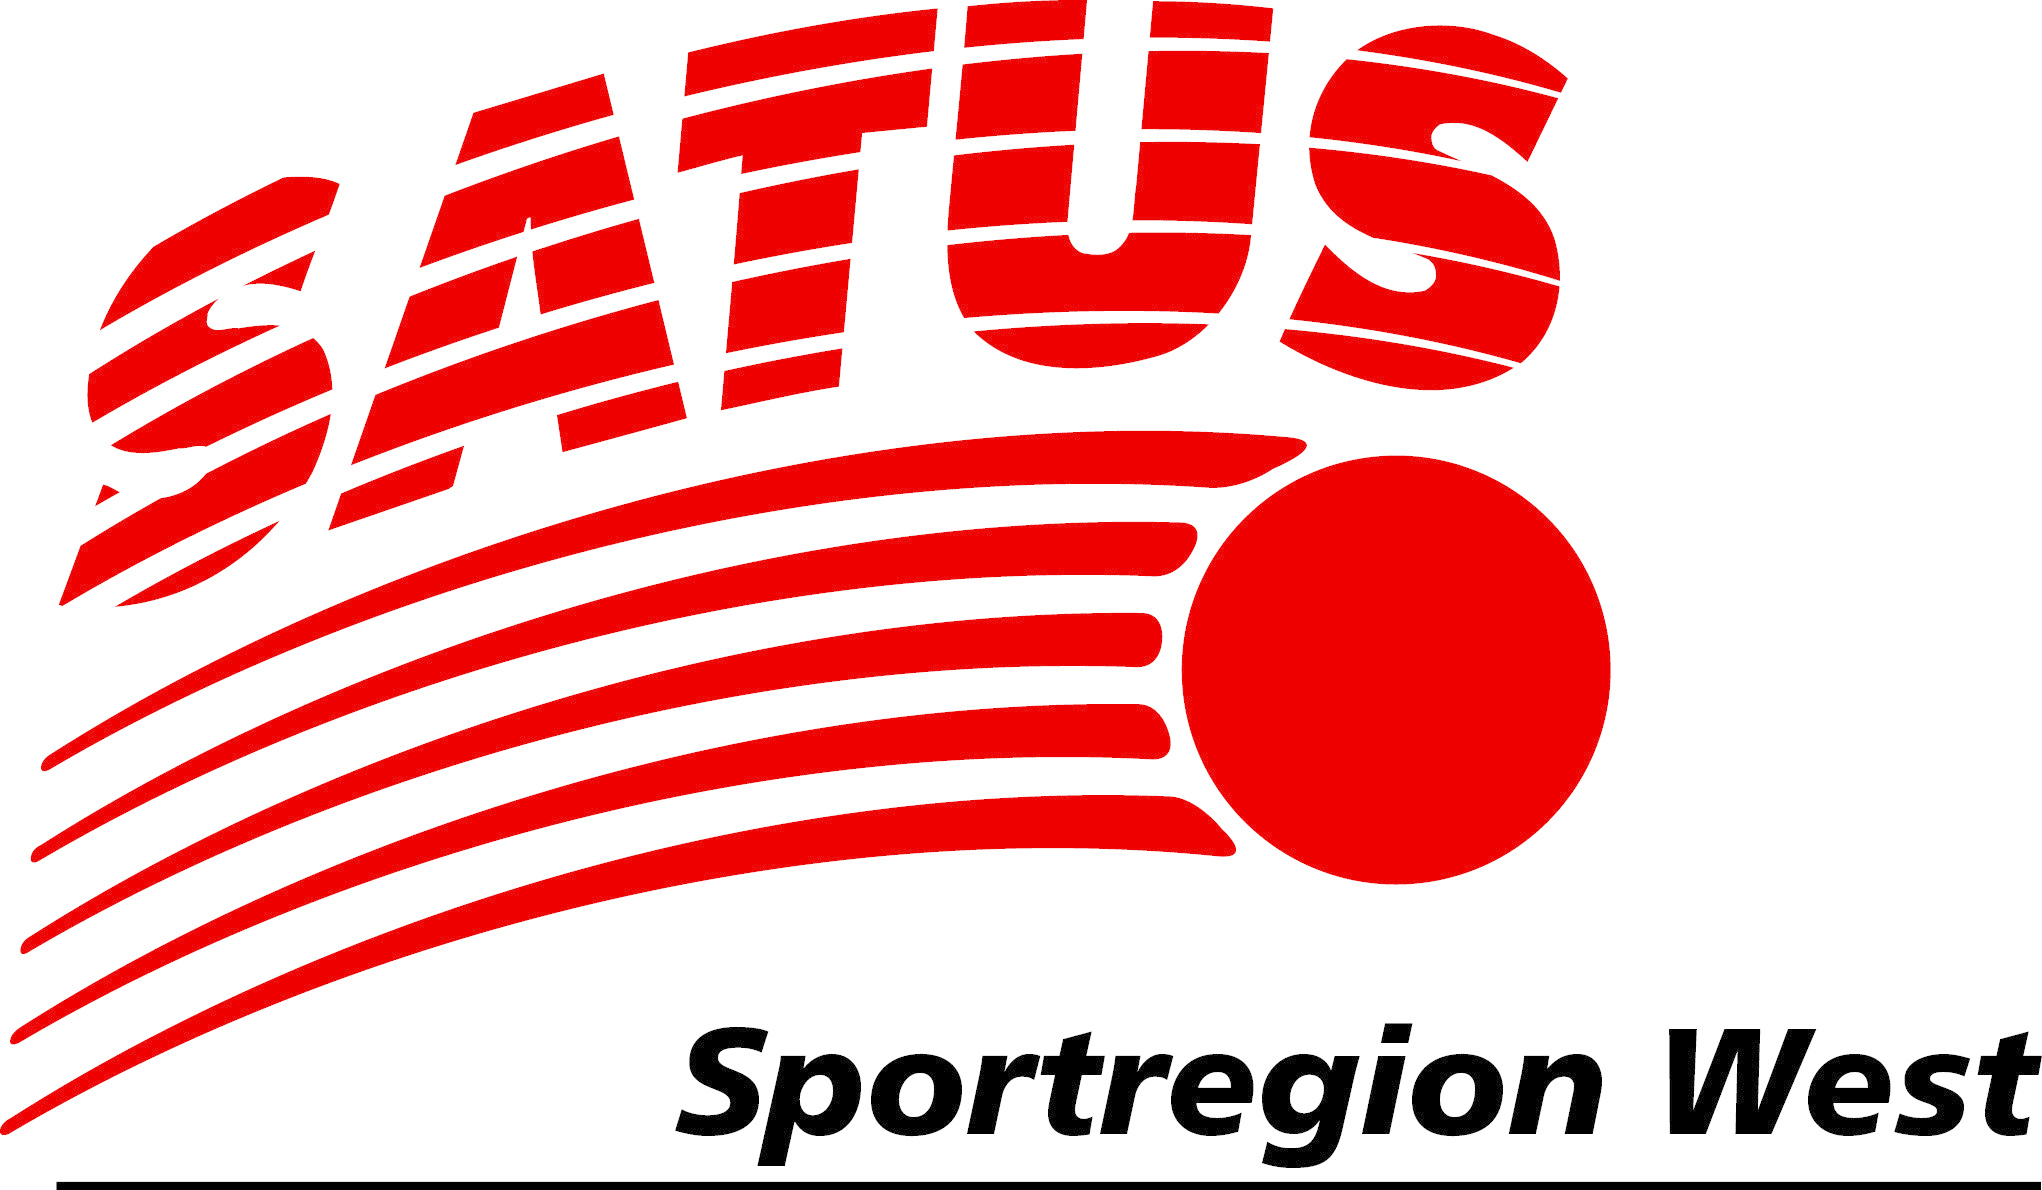 Herbstkurs SATUS-Sportregion WEST - SATUS - Schweizer Arbeiter-, Turn- und Sportverband